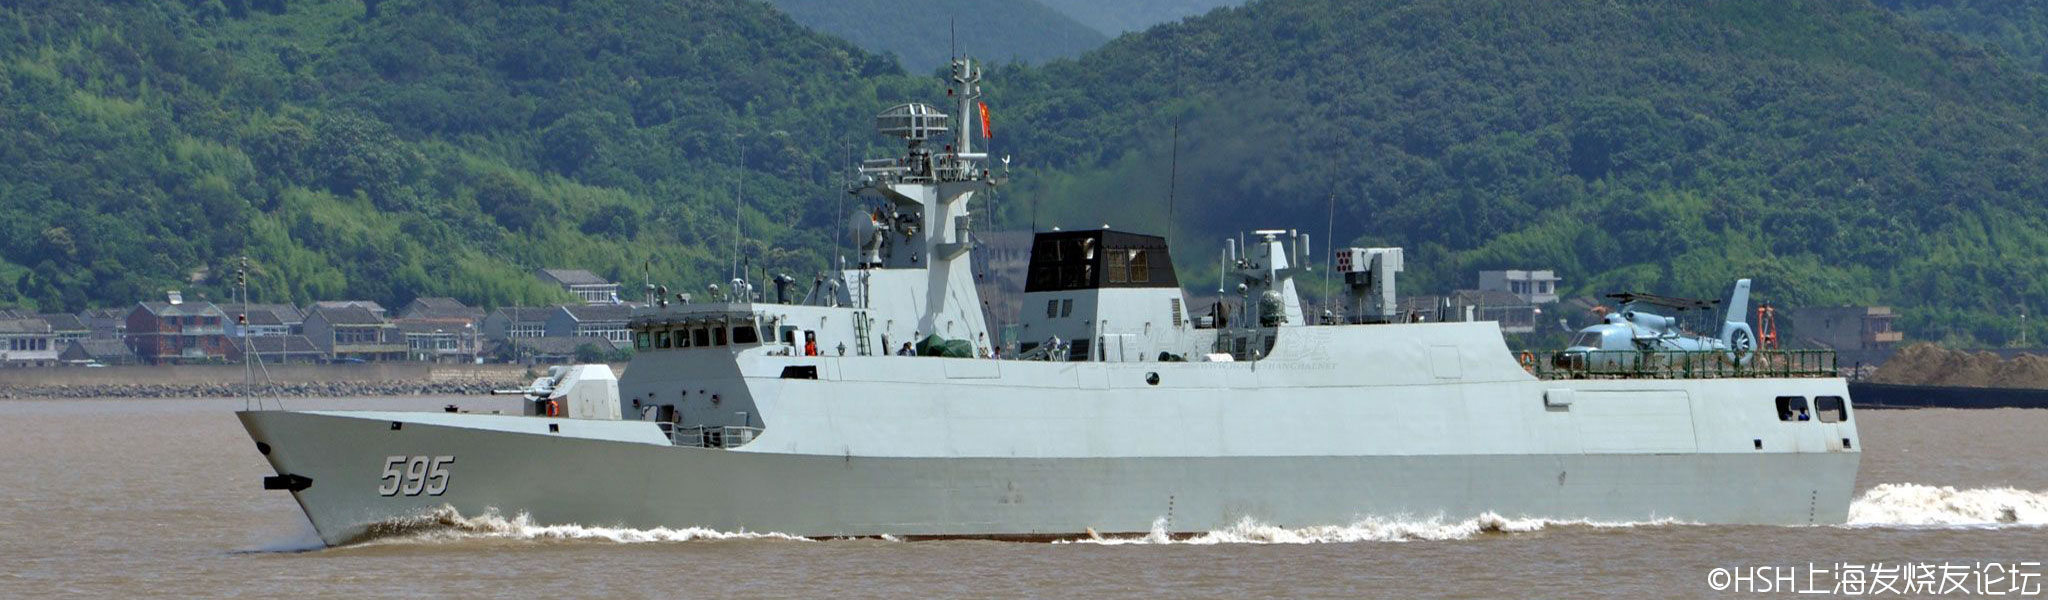 中國海軍潮州艦 FFG-595